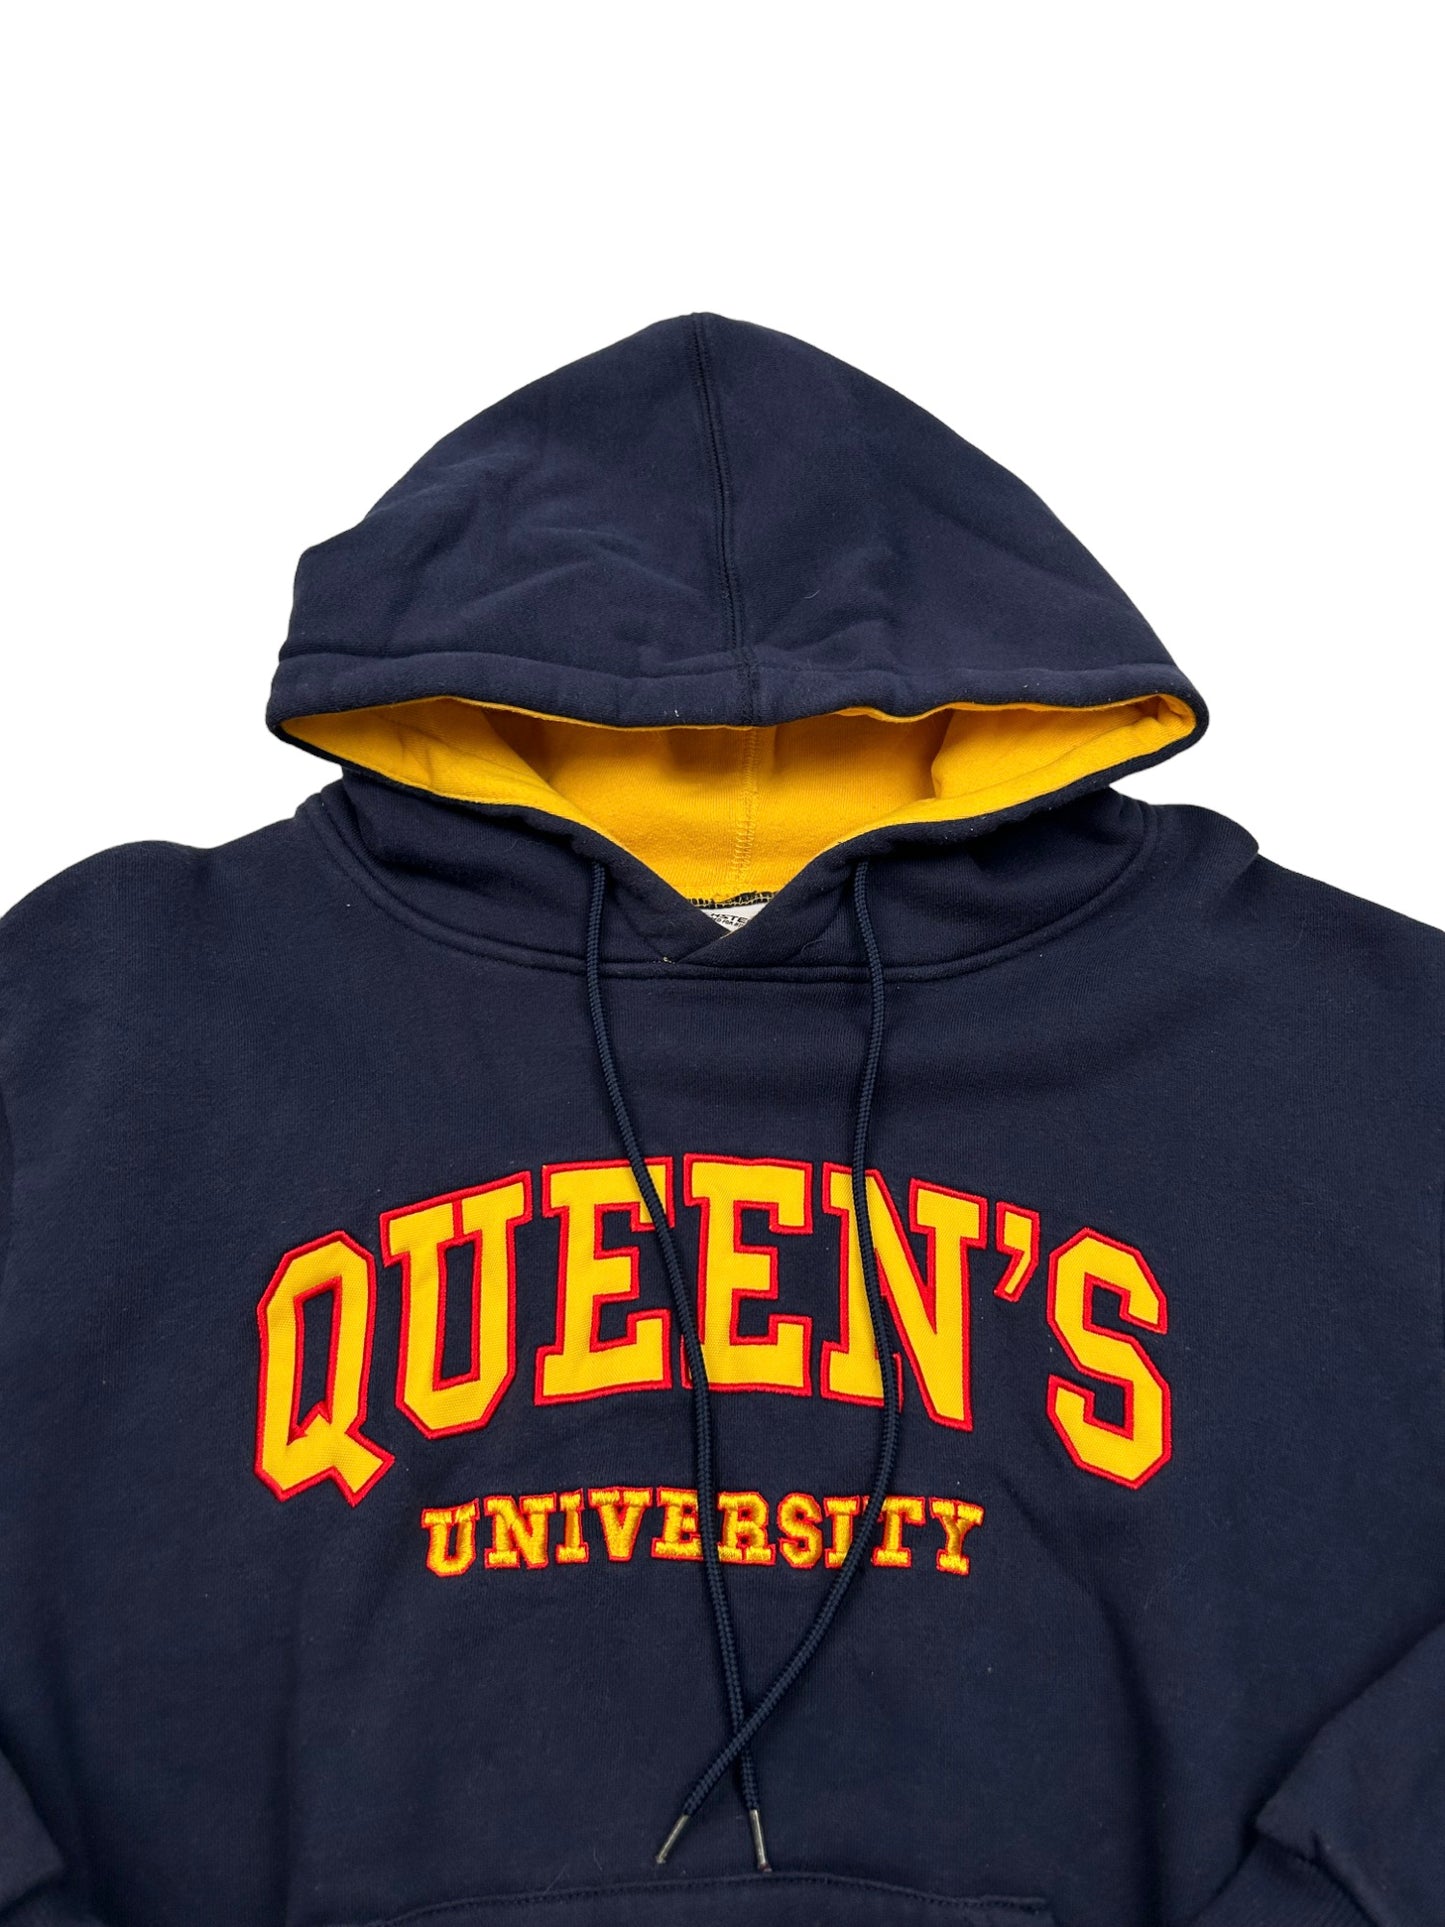 Queen's University Hoodie